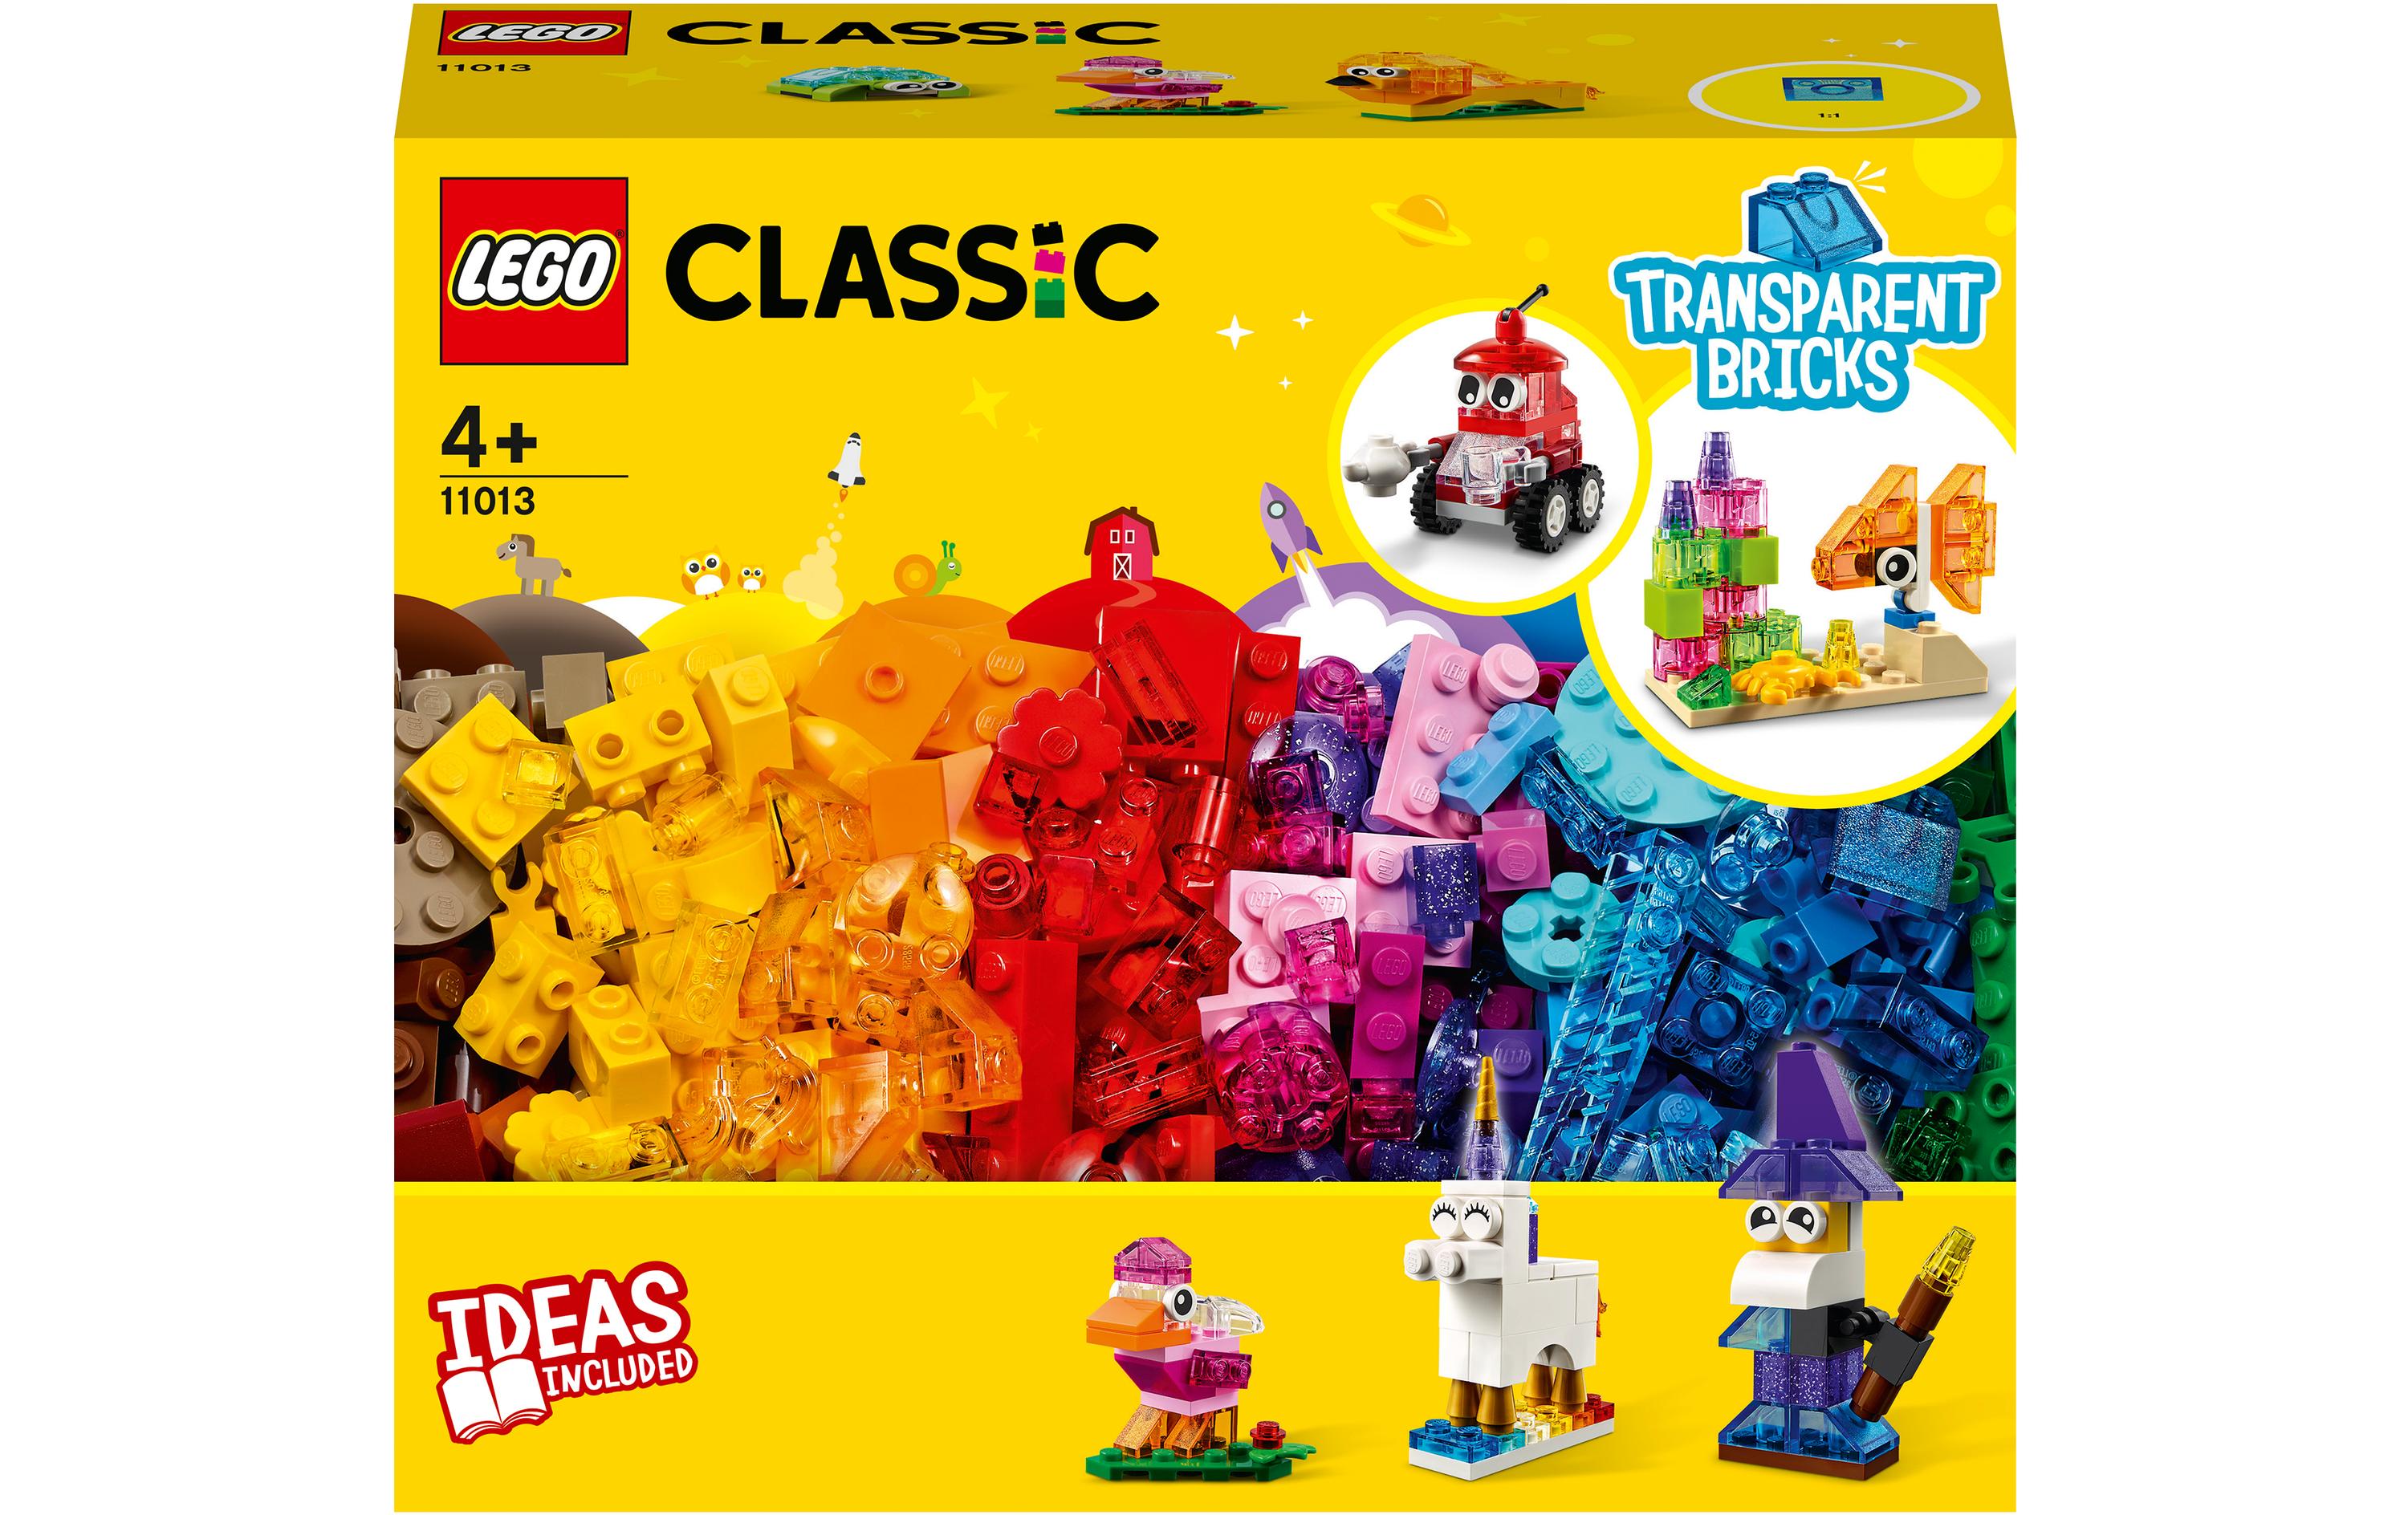 LEGO® Classic Kreativ-Bauset mit durchsichtigen Steinen 11013 - im GOLDSTIEN.SHOP verfügbar mit Gratisversand ab Schweizer Lager! (5702016888720)